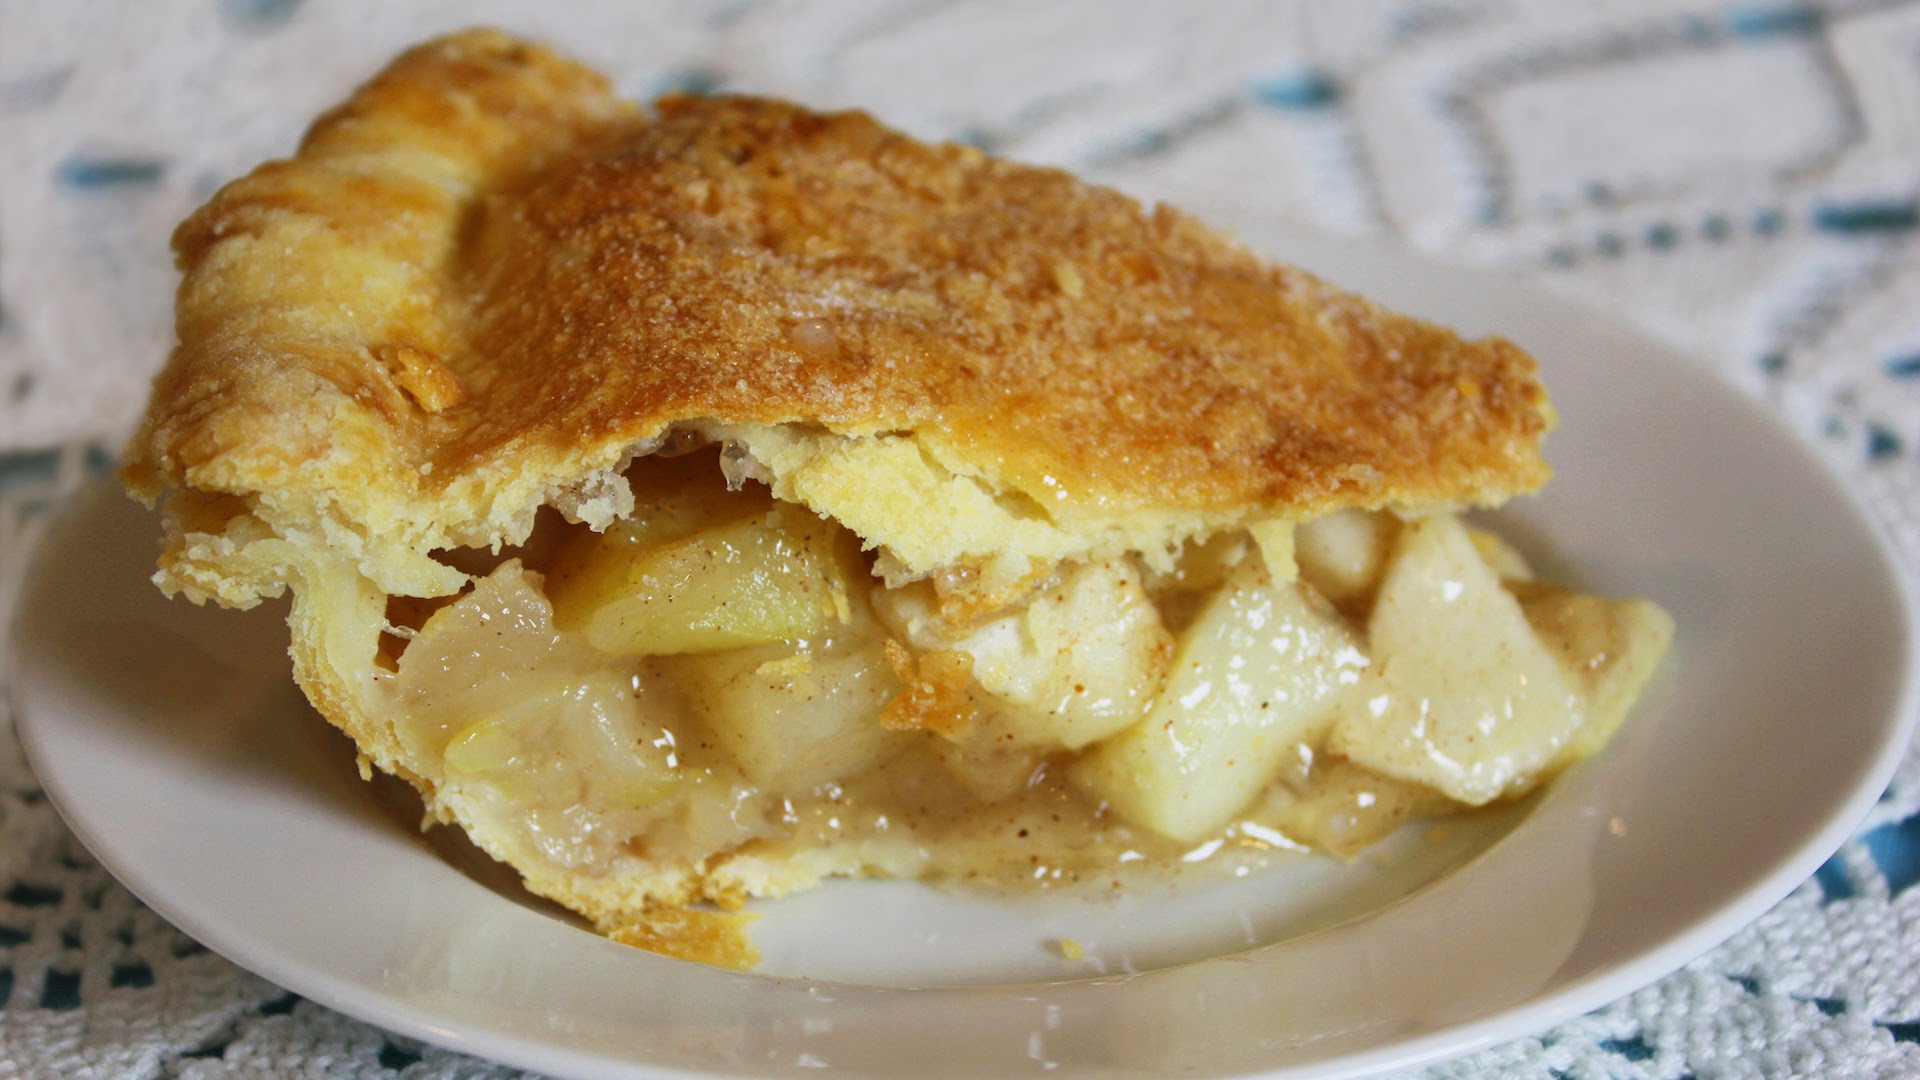 Homemade Apple Pie - Delicious & Healthier Apple Pie Recipe - YouTube